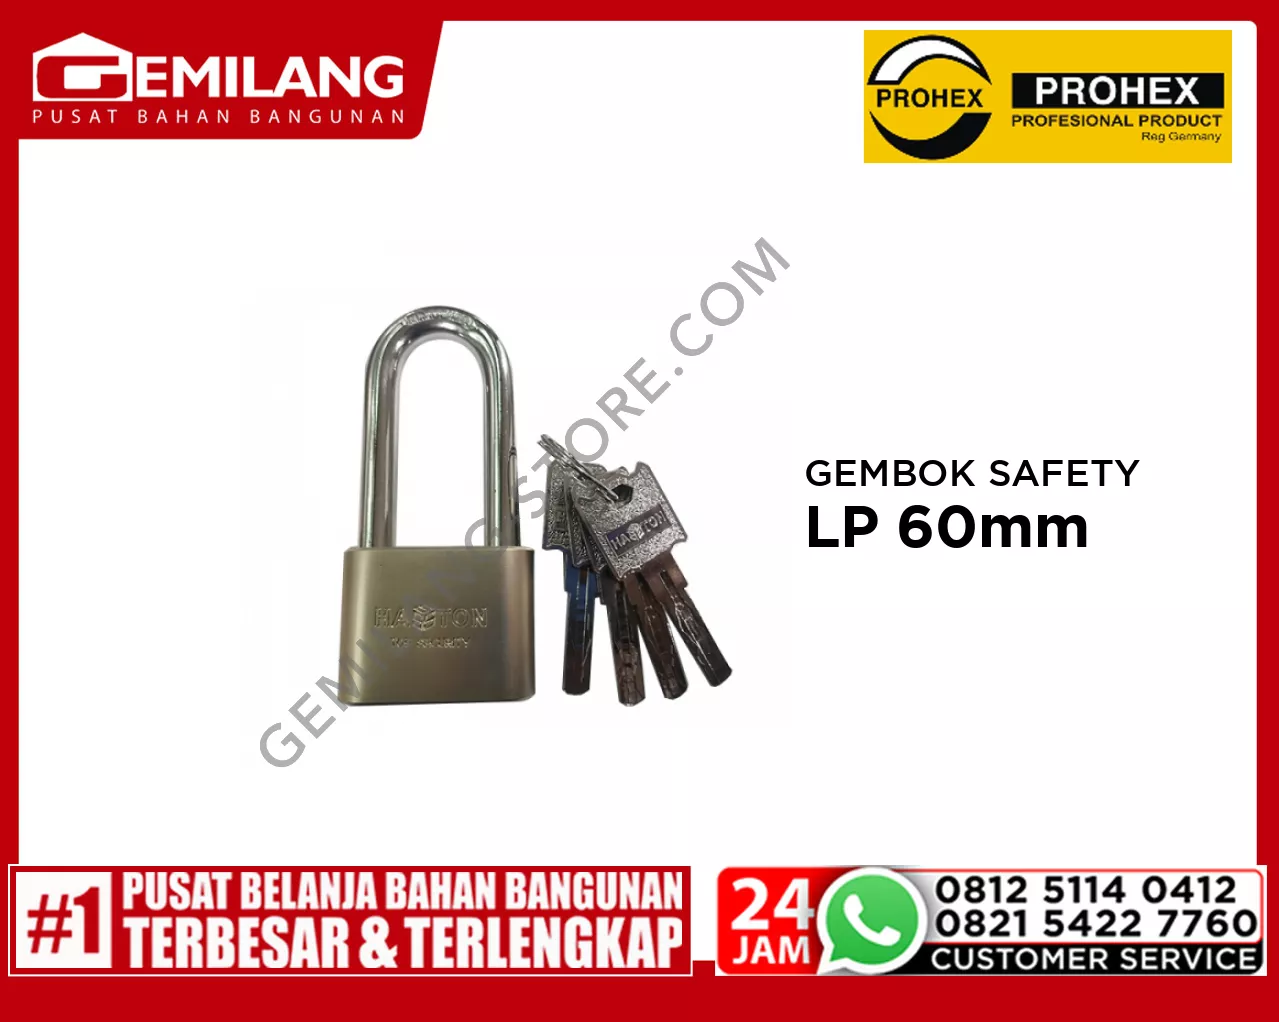 PROHEX GEMBOK SAFETY LP 60mm (1092-019)